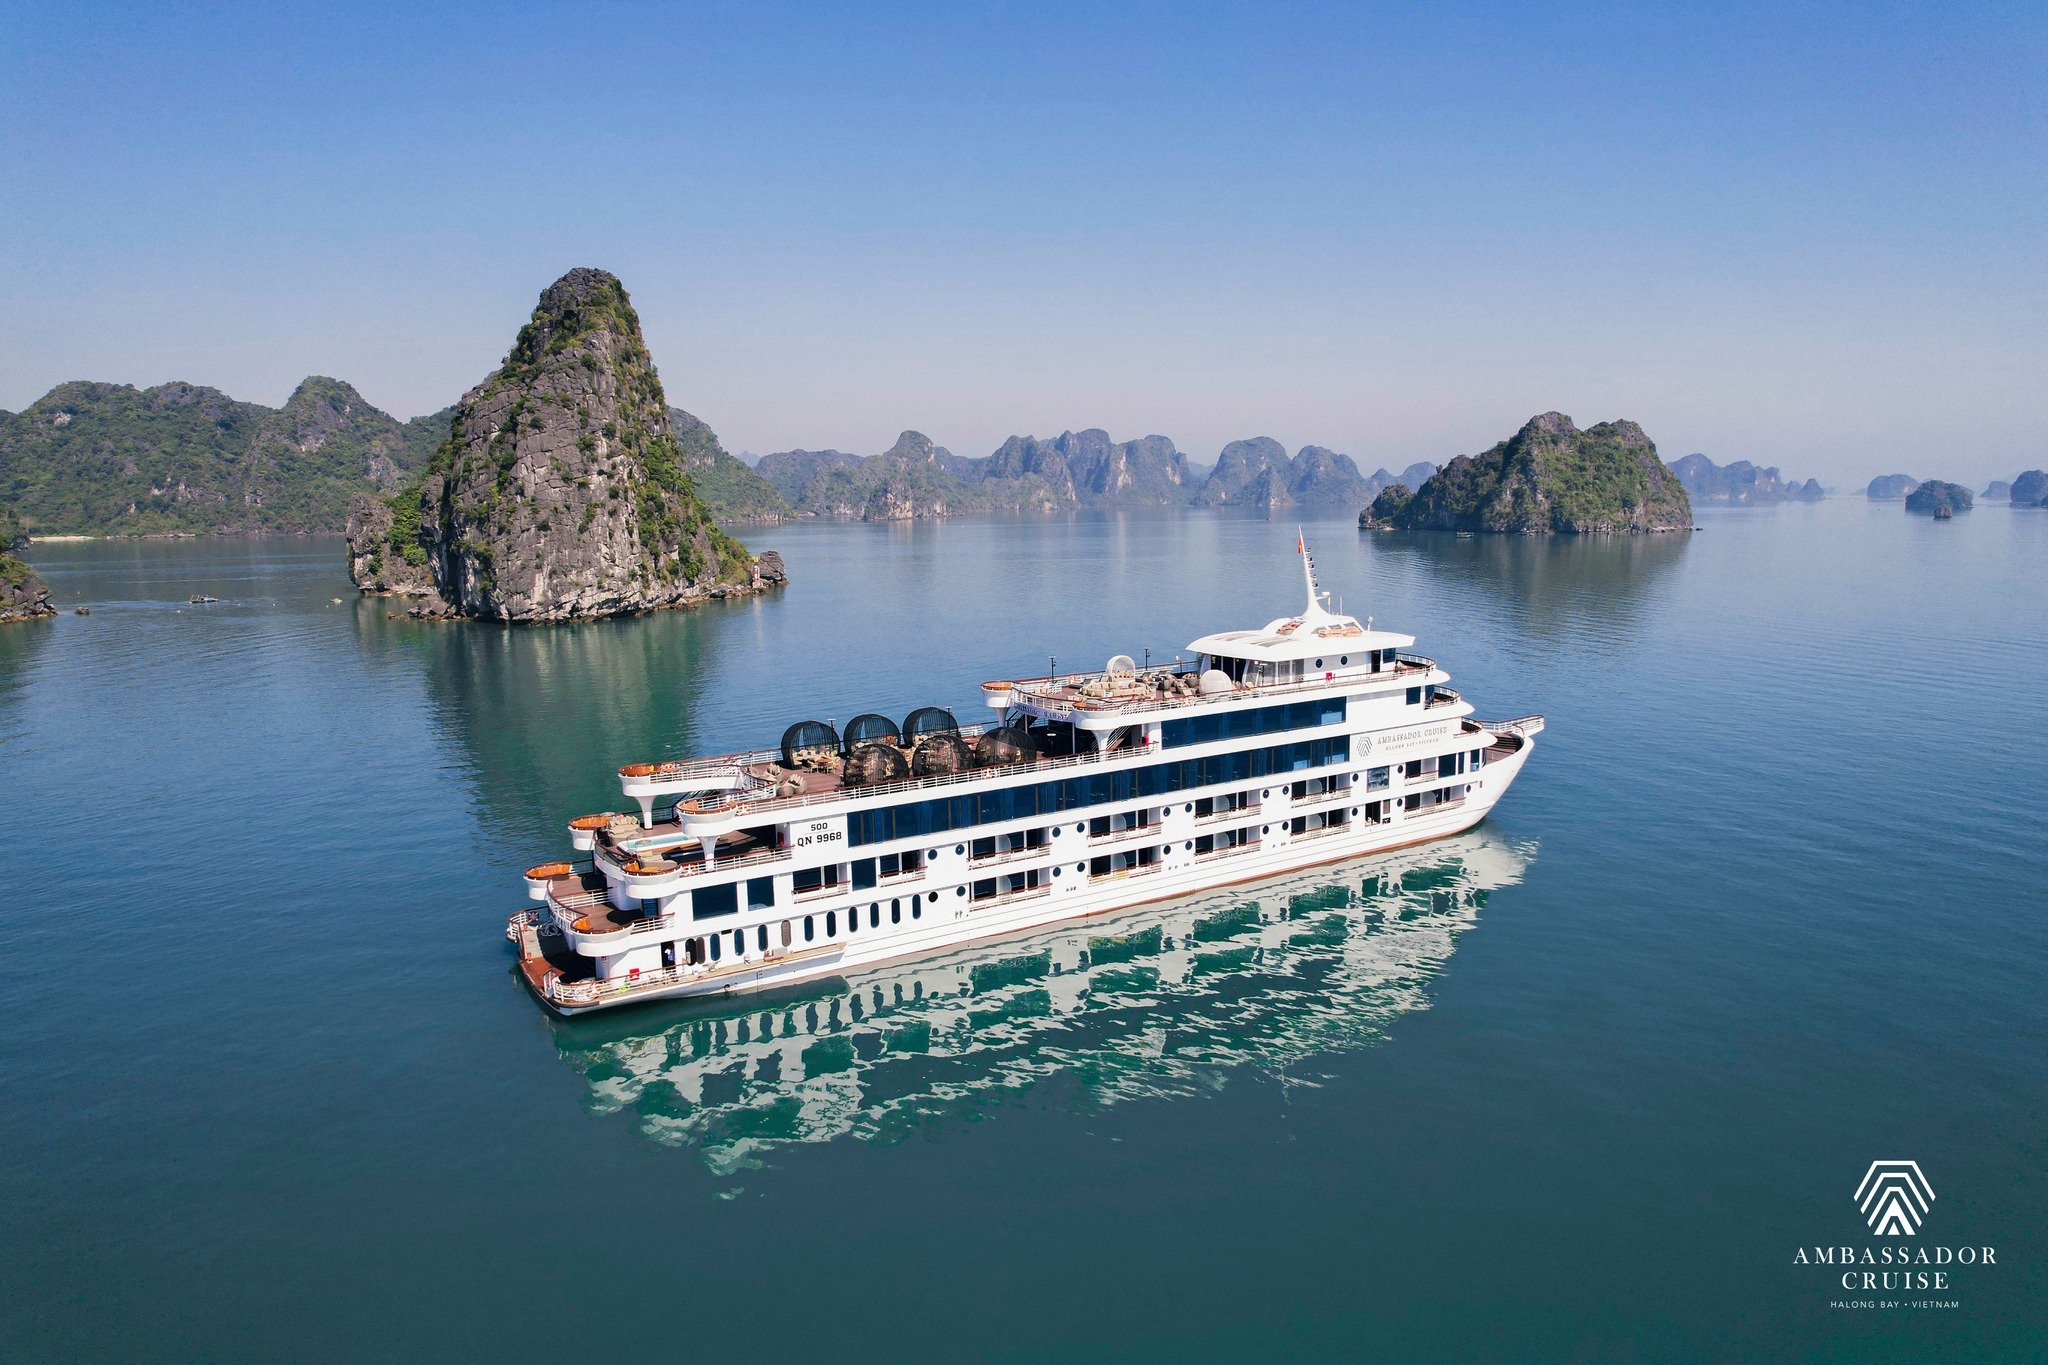 Tour du thuyền Ambassador 5 sao thăm vịnh Hạ Long 8 tiếng